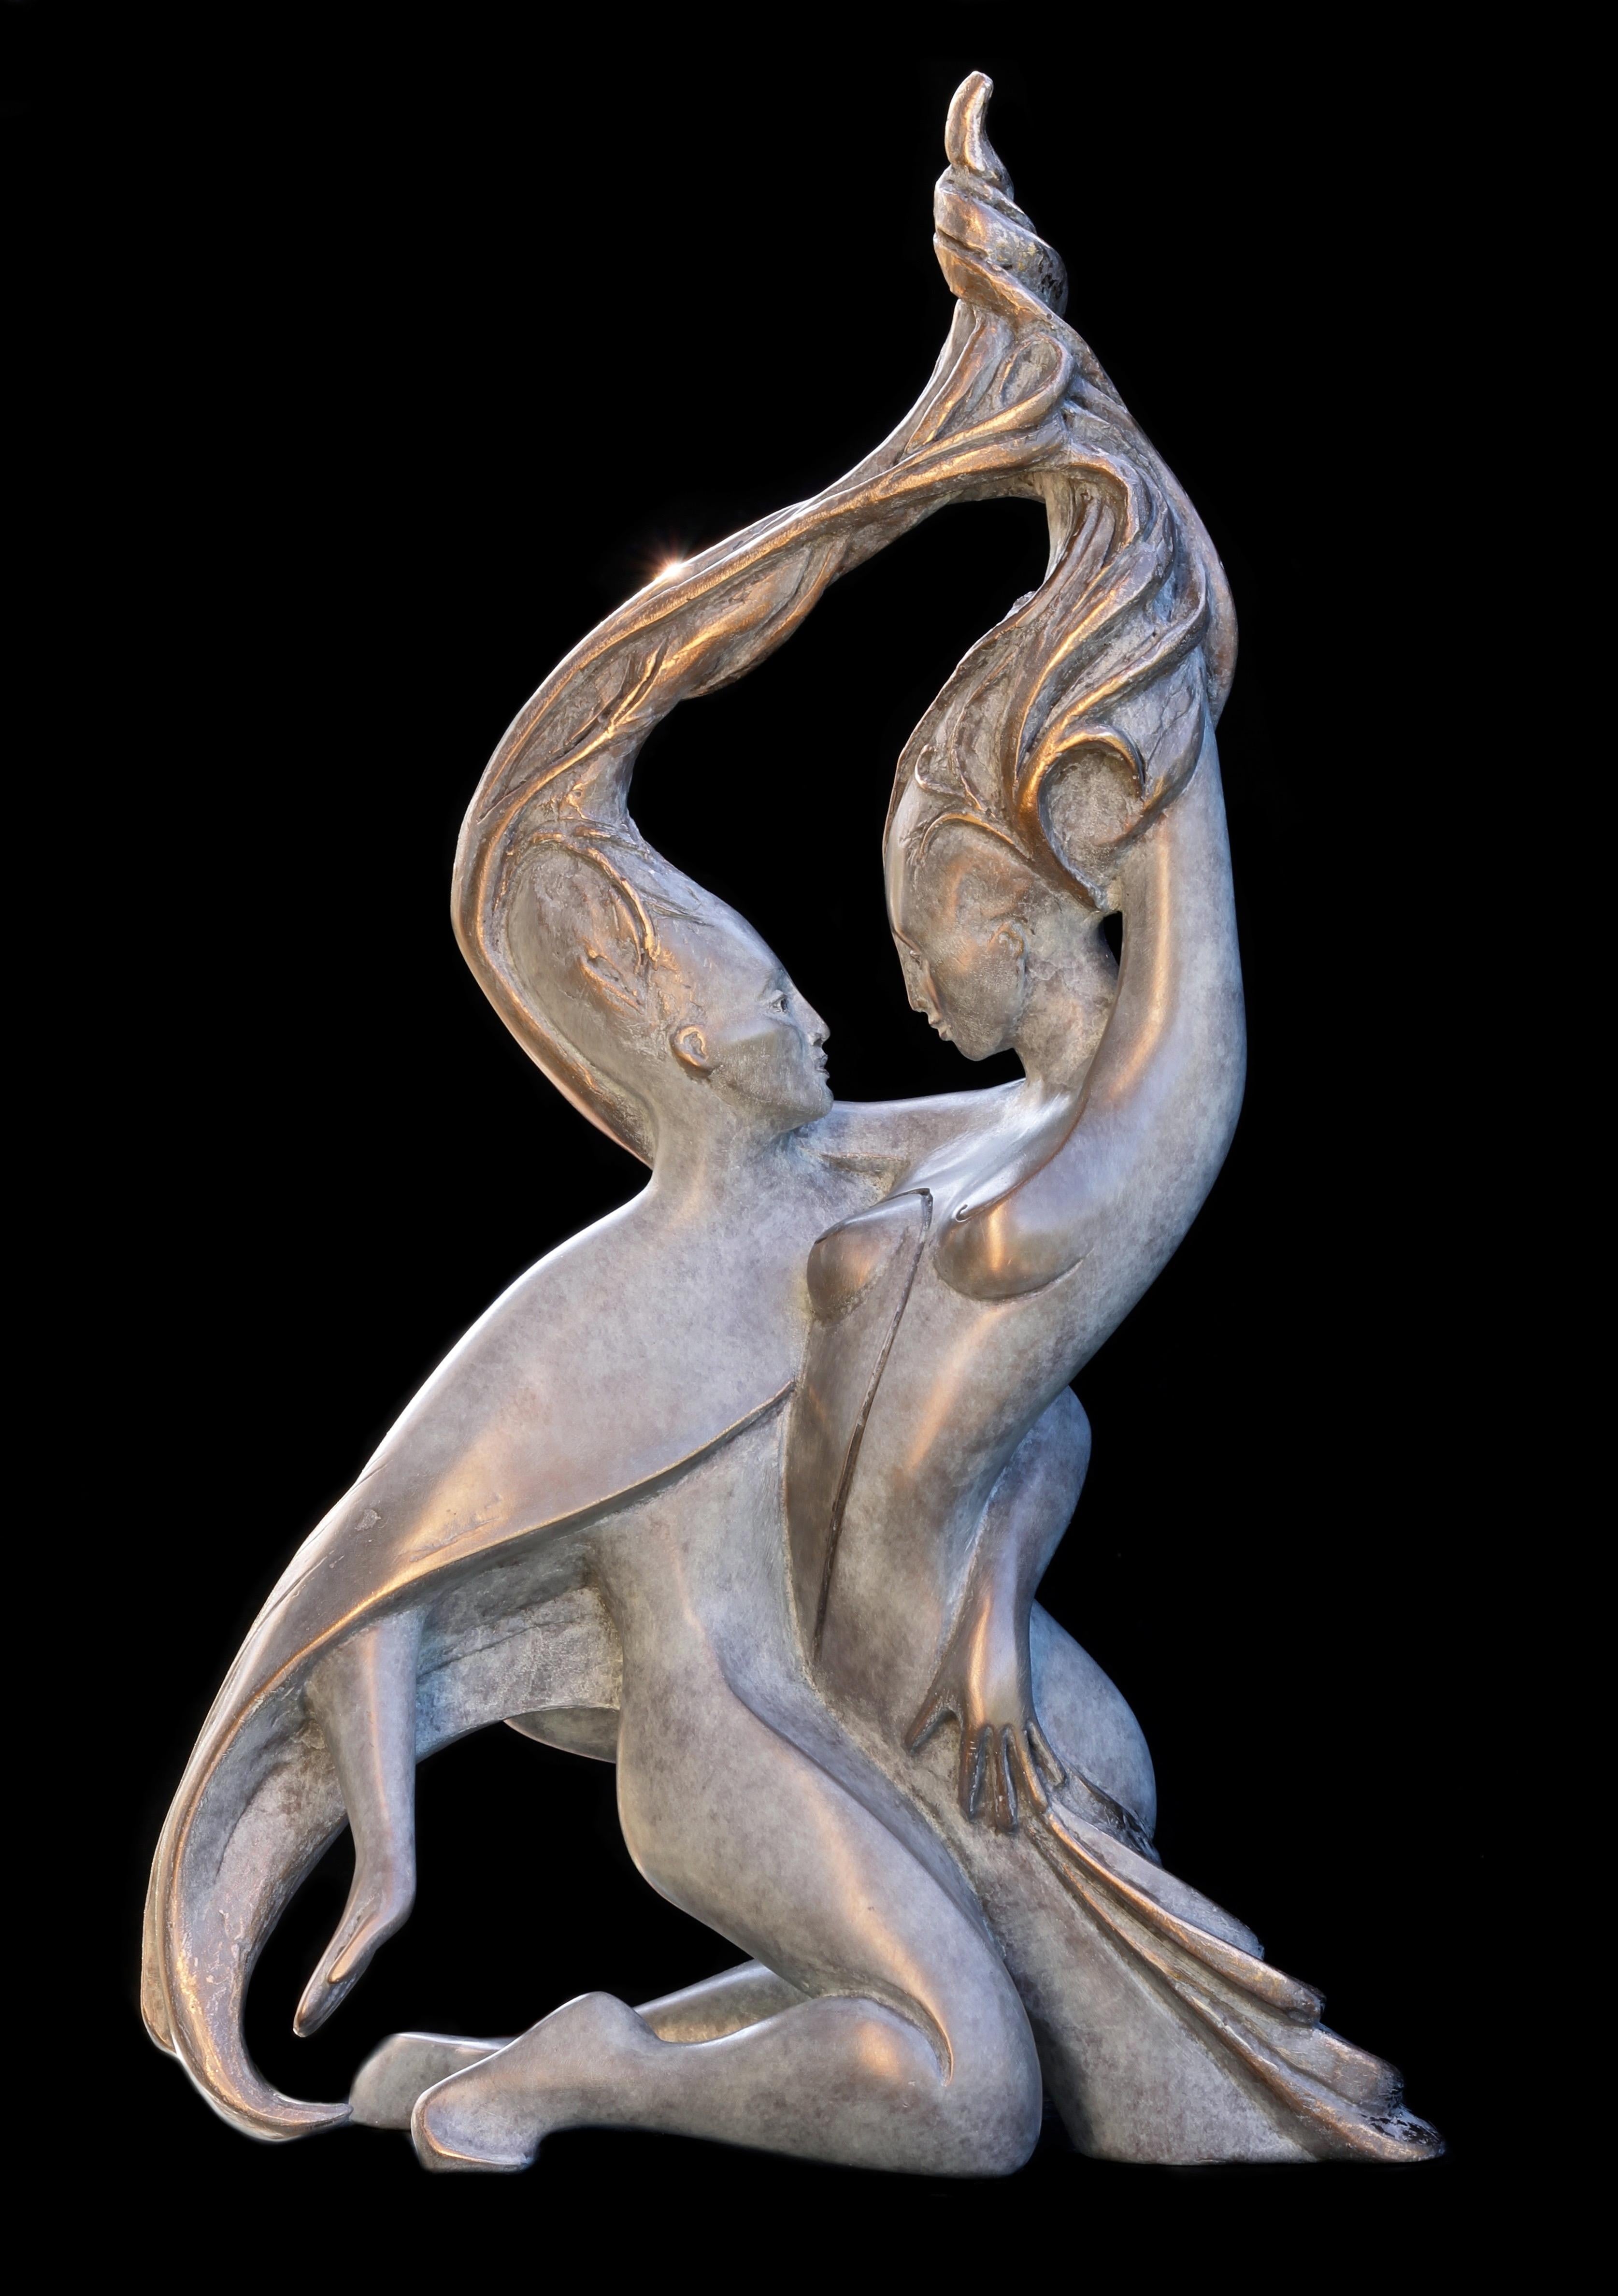 Isabelle Jeandot Nude Sculpture - "Sap", Vigor Nude Embracing Couple Bronze Sculpture